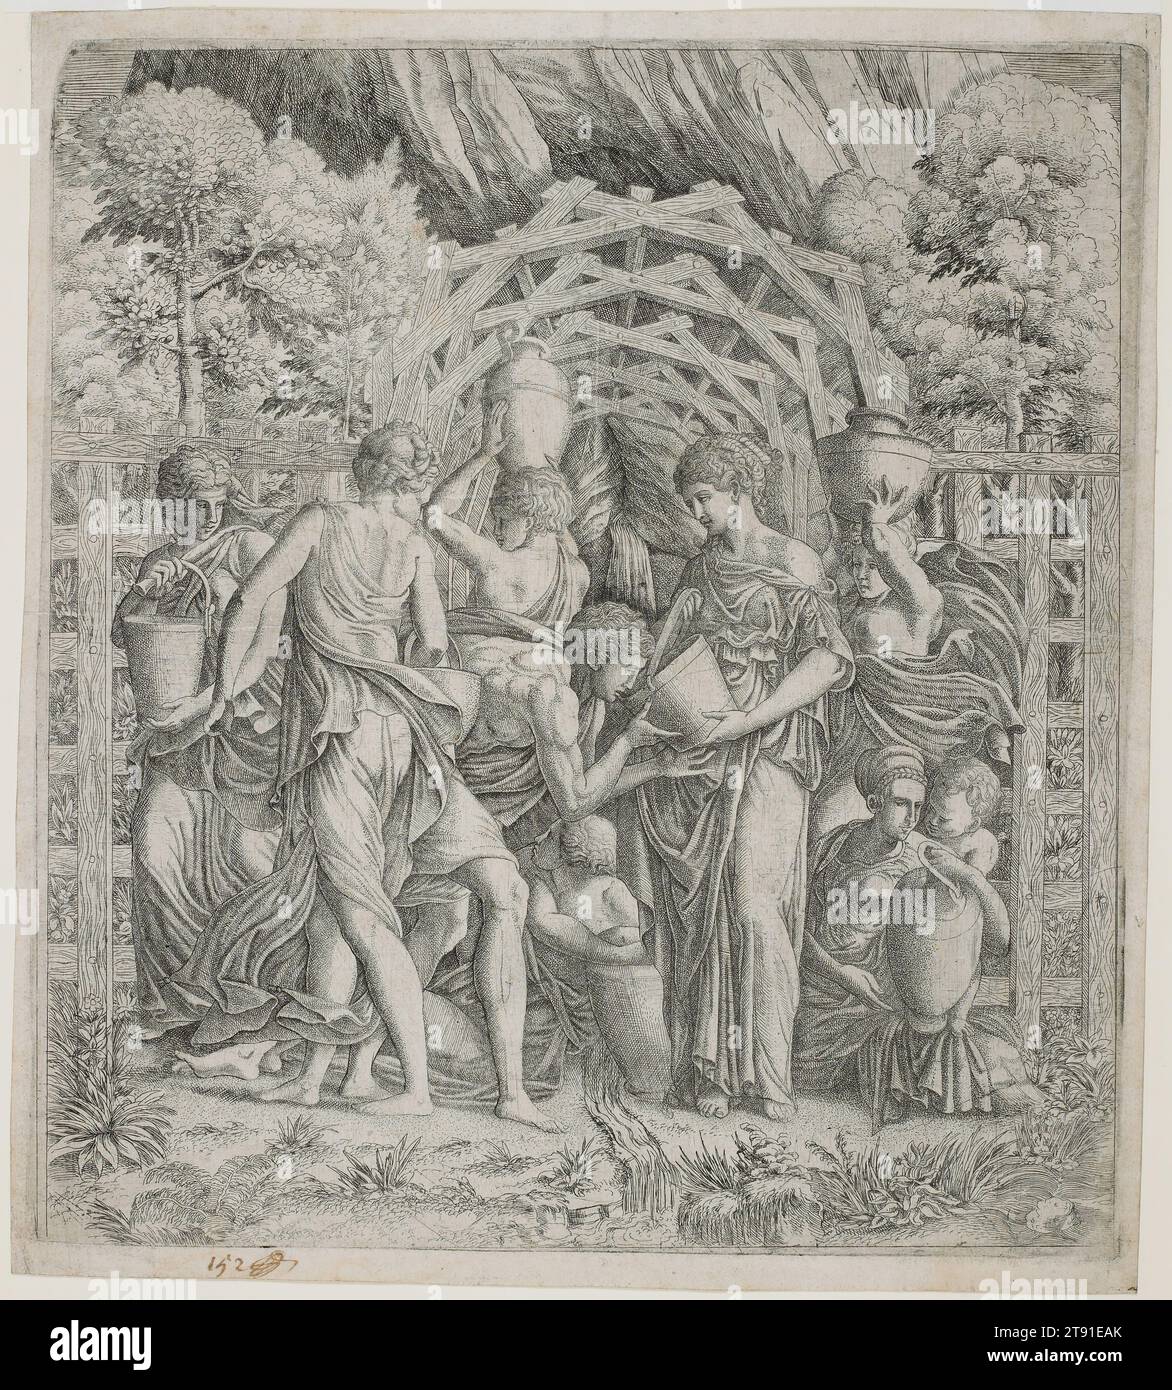 Rebecca y Eleazar en el pozo, c. 1540s, Escuela de Fontainebleau; Artista: Después de Francesco Primaticcio, 1504 - 1570, 14 1/4 x 12 3/4 in. (36,2 x 32,39 cm) (placa)15 x 13 3/8 in. (38,1 x 33,97 cm) (hoja), Grabado y grabado, Italia, siglo XVI, el programa decorativo lujoso en el palacio de Fontainebleau de Francia fue impulsado por los italianos, en particular Rosso Fiorentino y Primaticcio. Hoy en día, los elocuentes inventos de Primaticcio se conocen en gran medida a través de impresiones escasas como esta. Aquí una monumental Rebecca ofrece una bebida en medio de una serie rítmica de jarras de agua, aludiendo a las riquezas de Francia Foto de stock